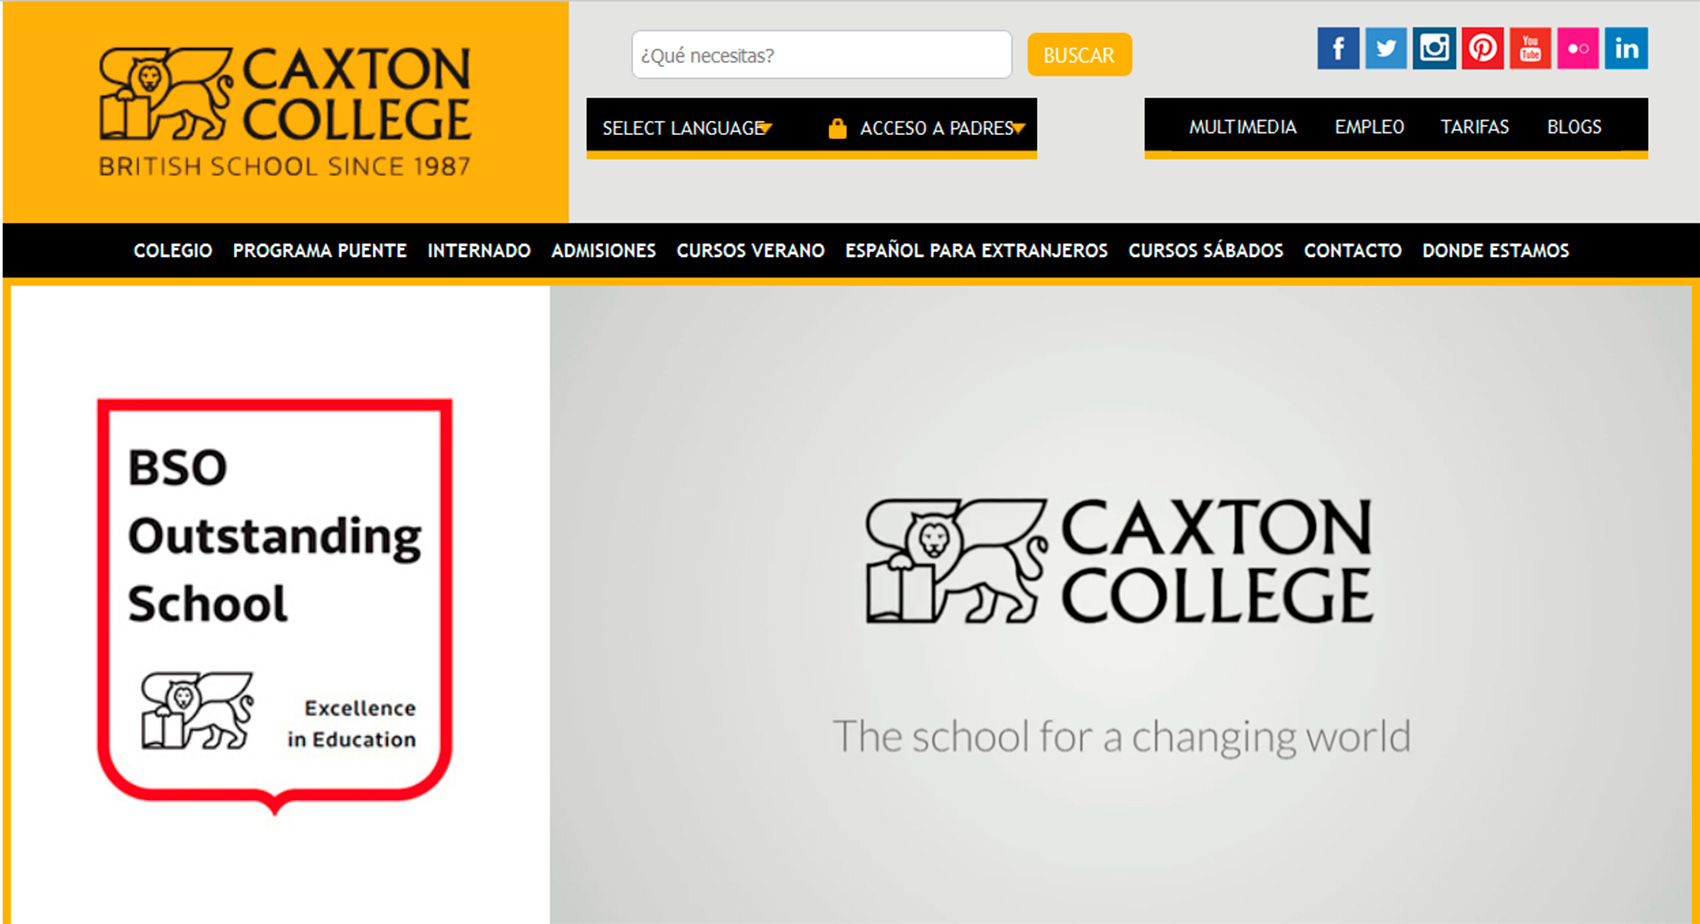 Desde el ao 2011 Caxton College cuenta con un portal web dirigido a los padres para tener una comunicacin online...